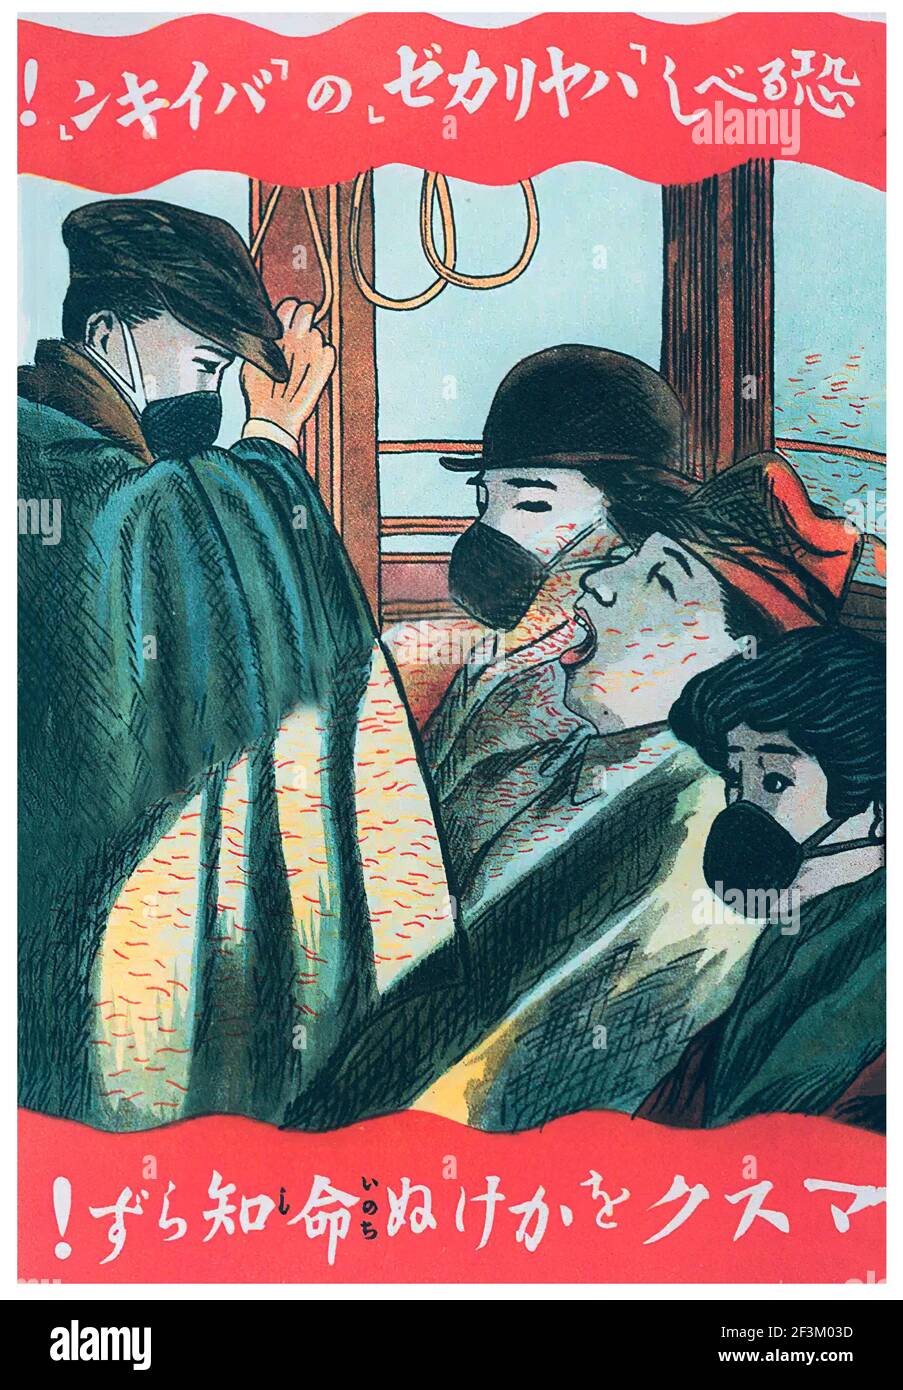 Ein klassisches japanisches Plakat, das die Menschen dazu auffordert, während der Spanischen Grippe-Pandemie Masken zu tragen. Japan, 1918 Stockfoto